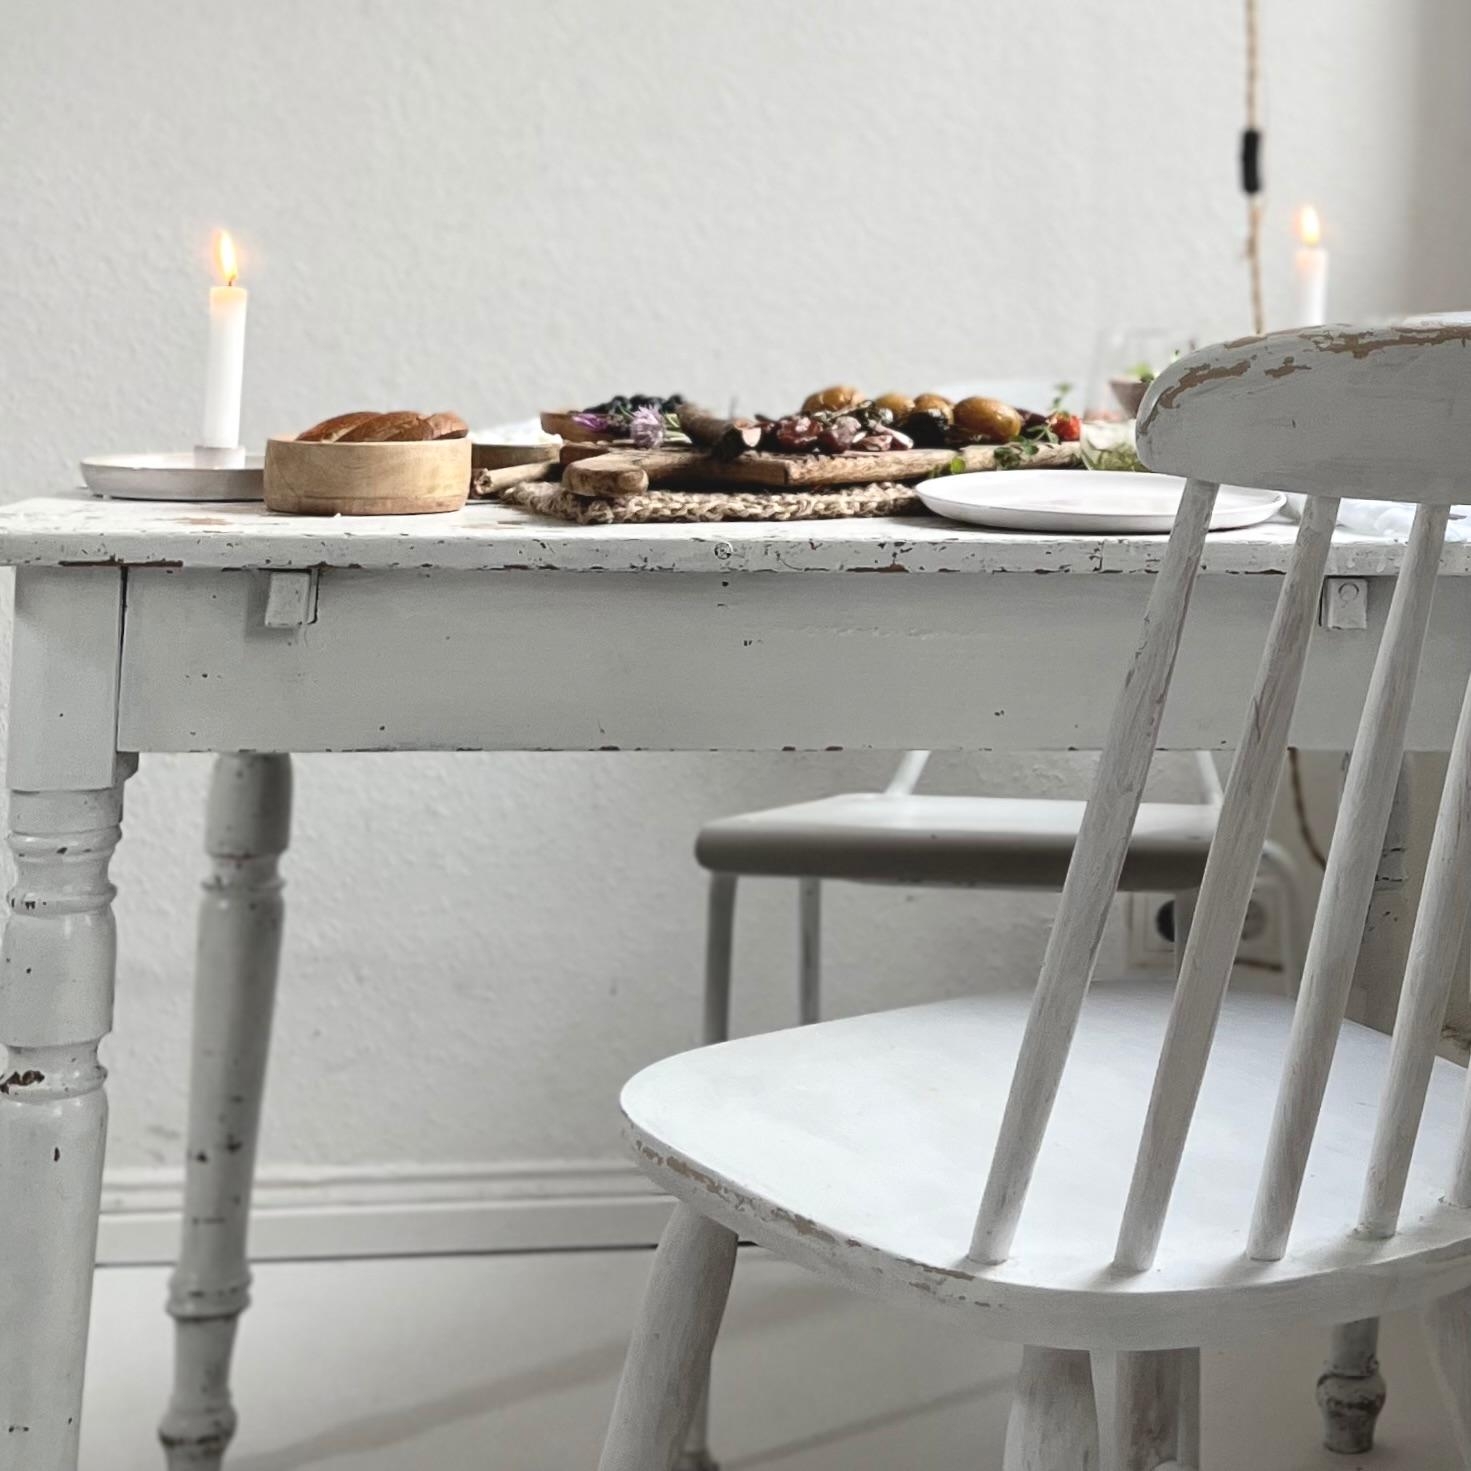 #table #whiteinterior #simple #vintage
#paintedfurniture #scandi